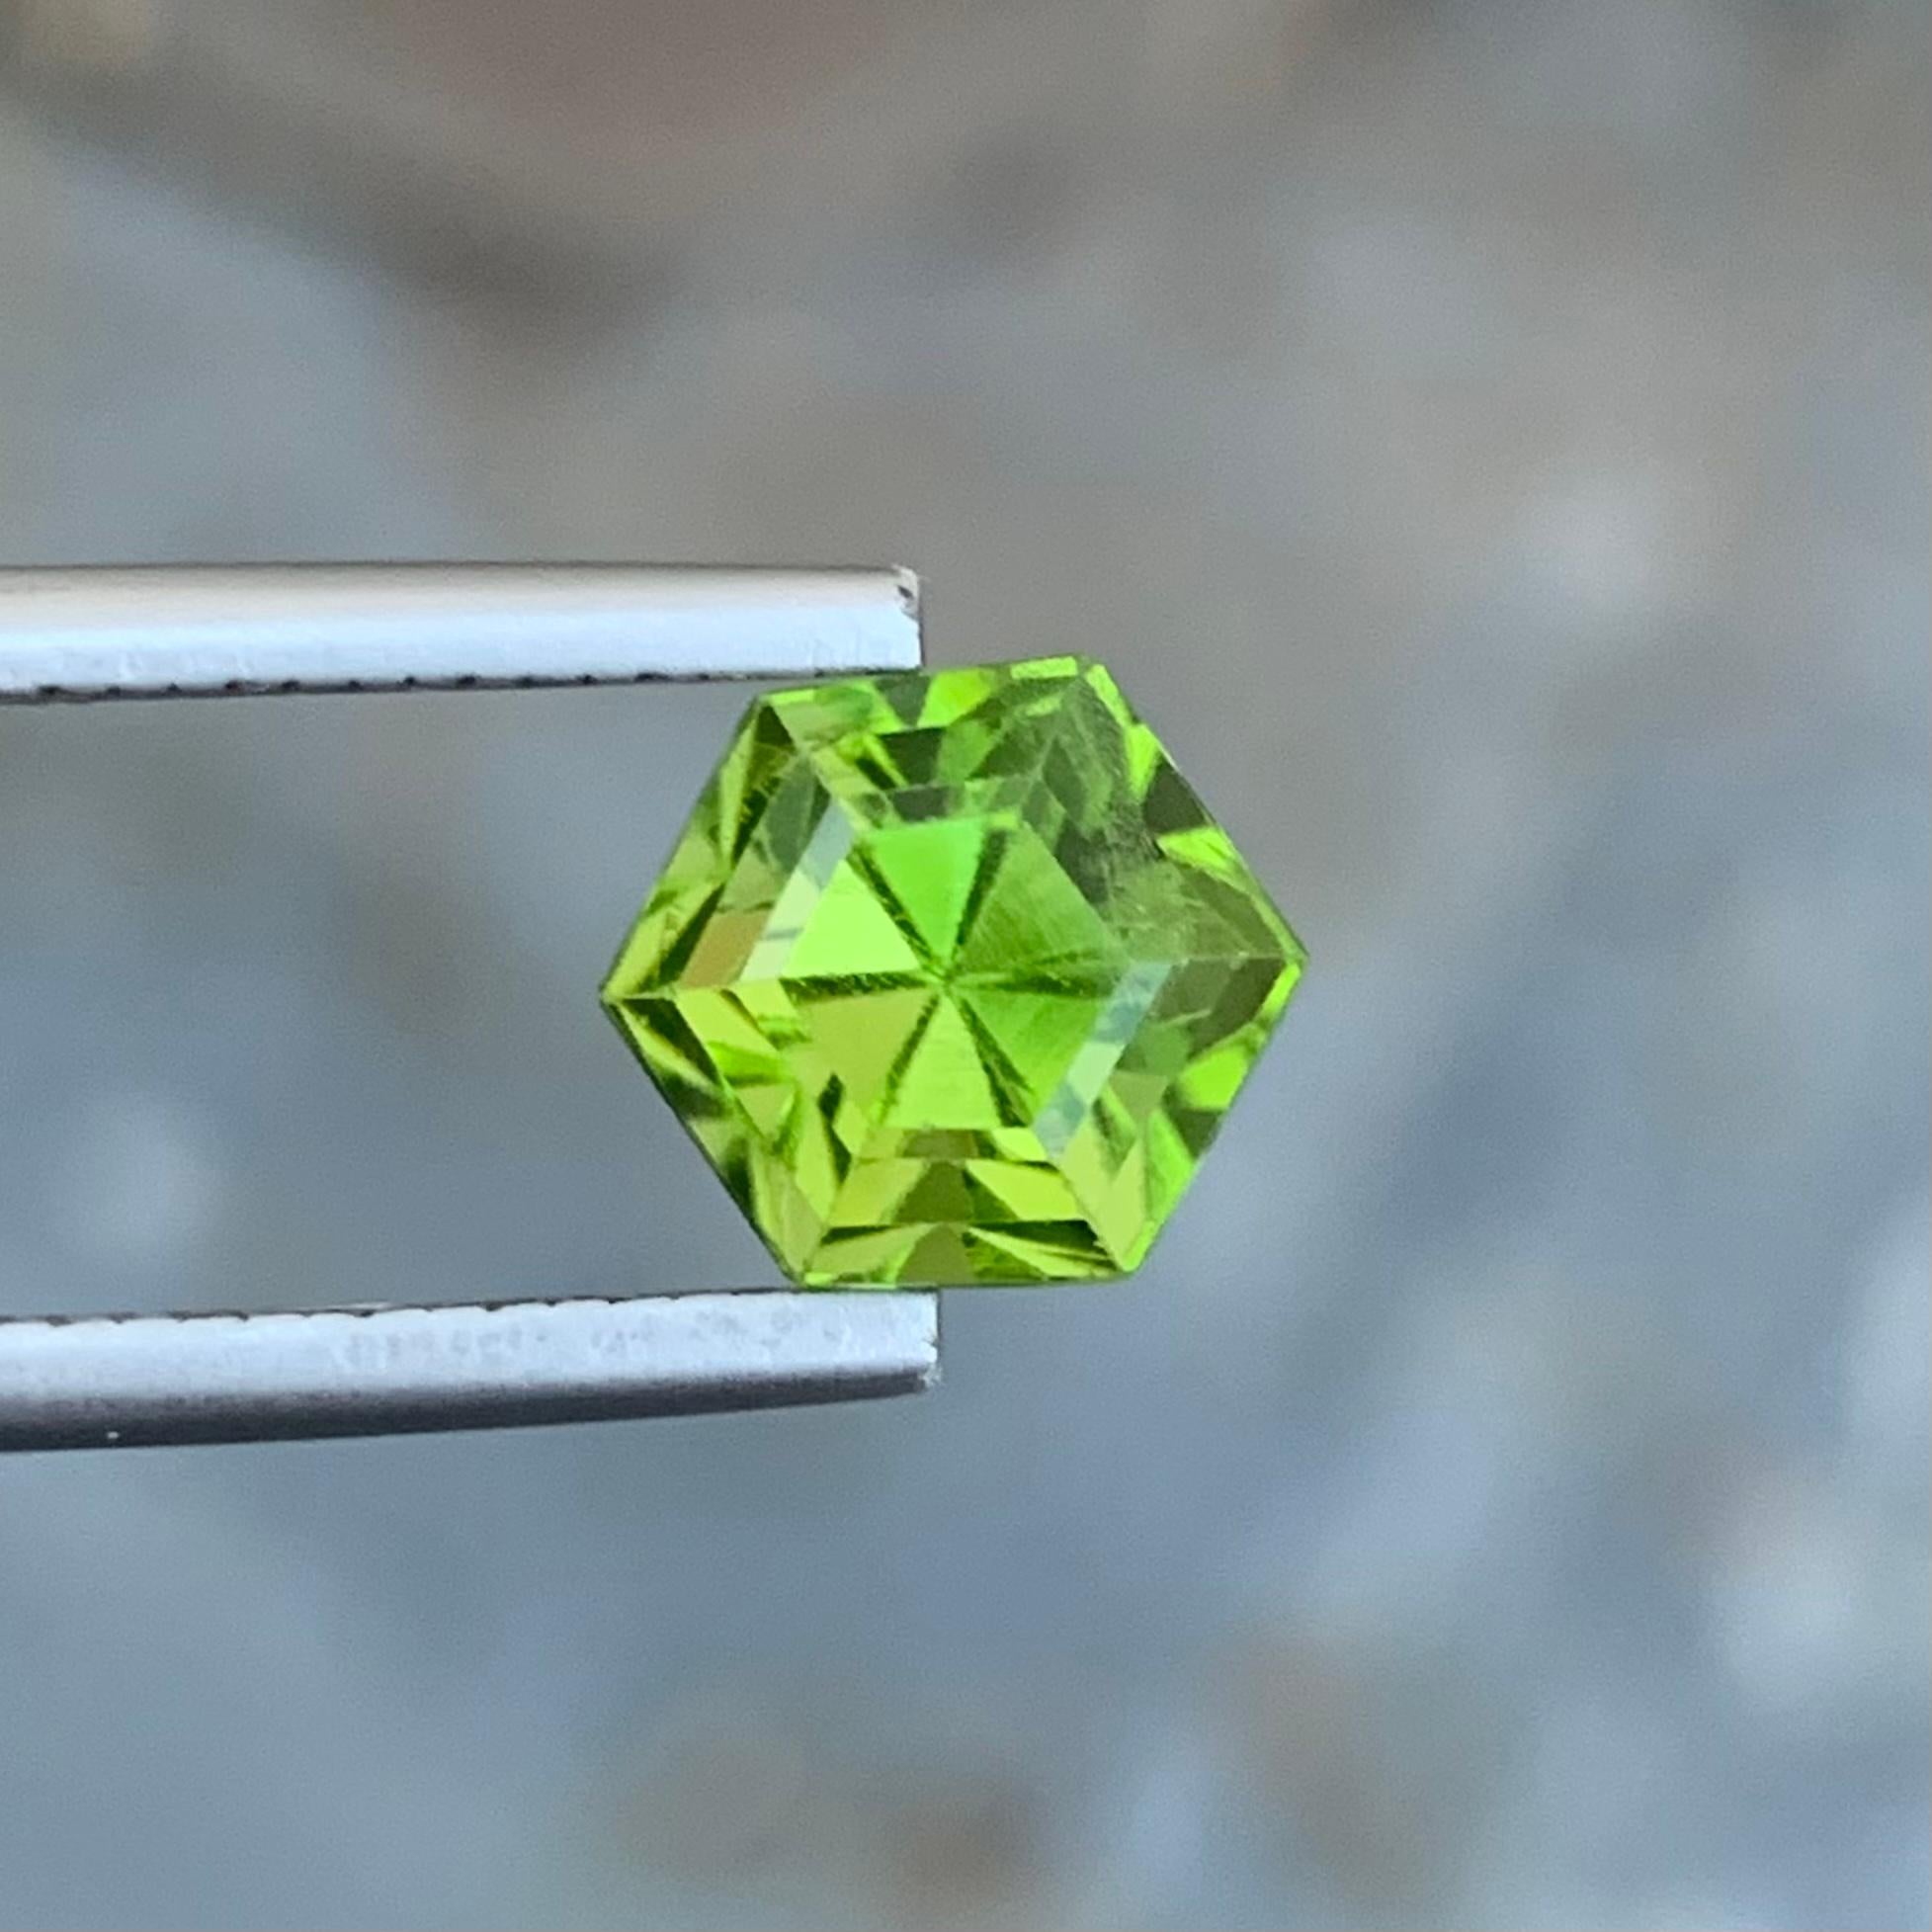 Arts and Crafts Bague en péridot vert hexagonal non serti de 3,35 carats provenant d'une mine de la vallée du Supat en vente